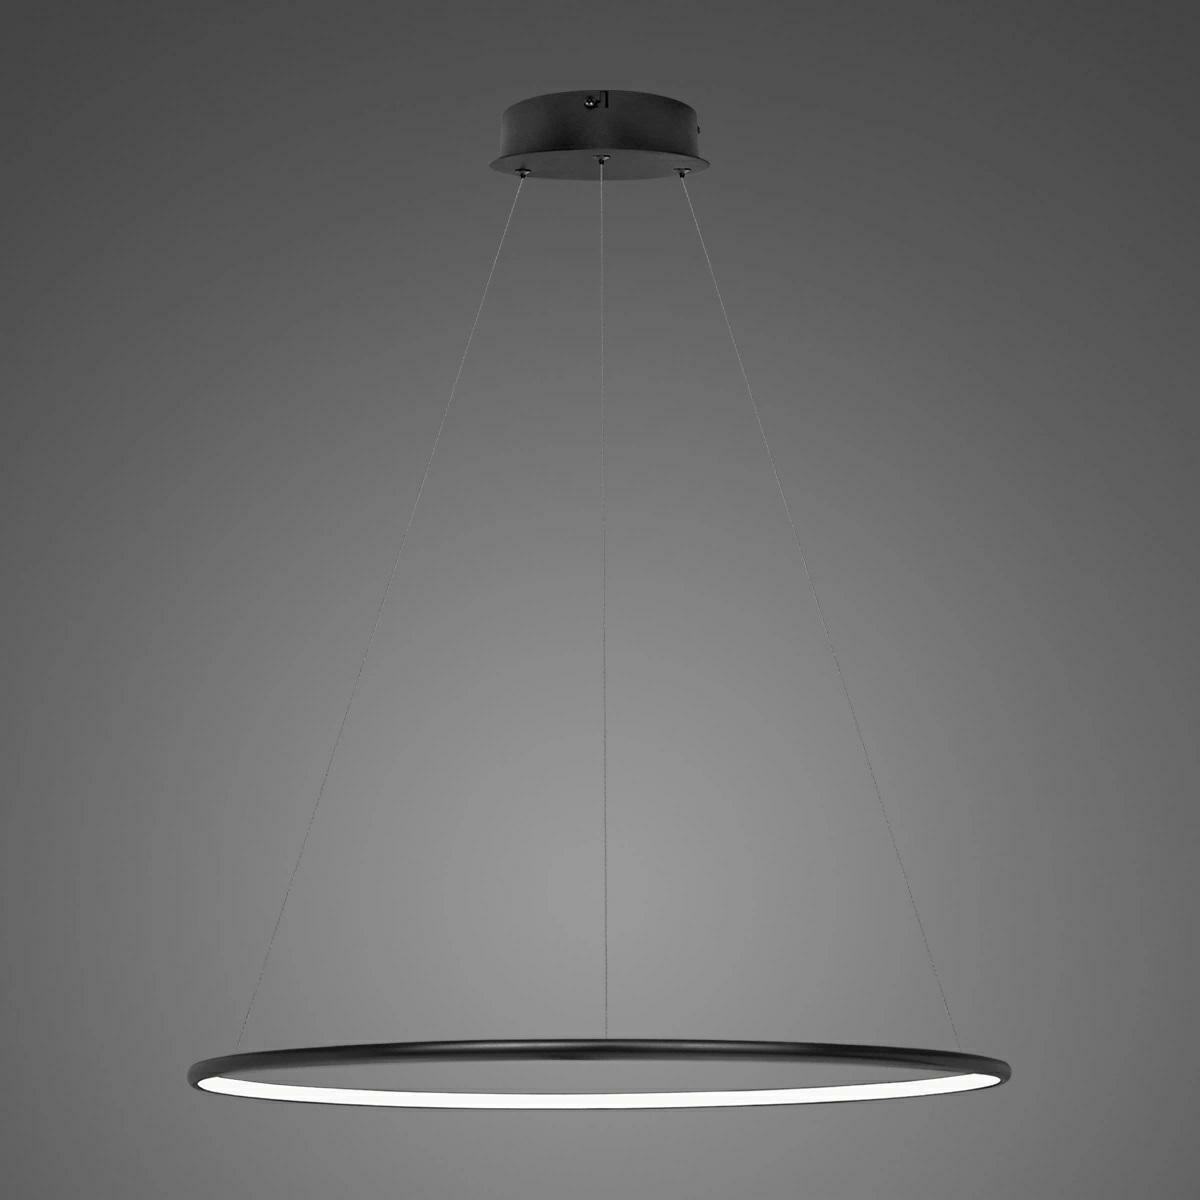 Altavola Design Lampa sufitowa Nowoczesna lampa sufitowa LED łazienkowa Altavola Led shape LA073/P_80_in_3k_black_dimm LA073/P_80_in_3k_black_dimm